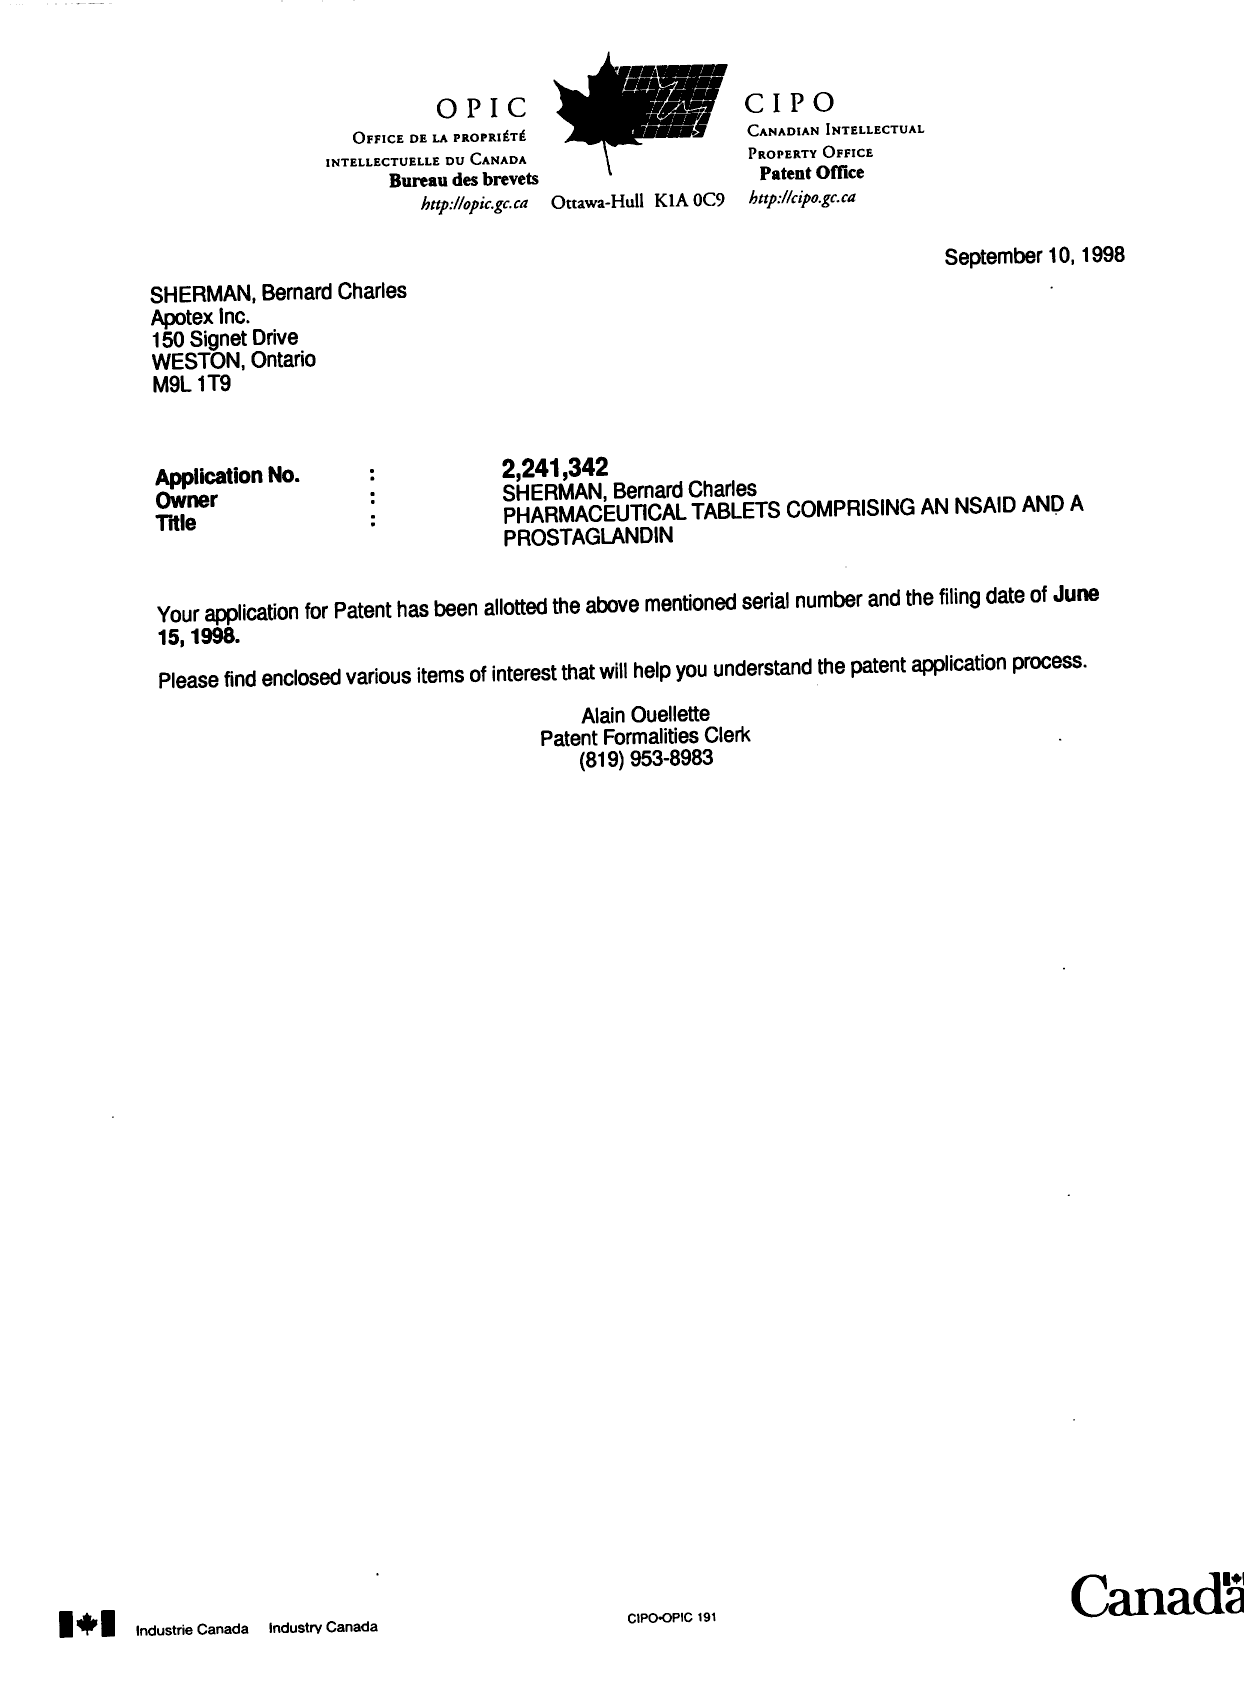 Document de brevet canadien 2241342. Correspondance 19980910. Image 1 de 1